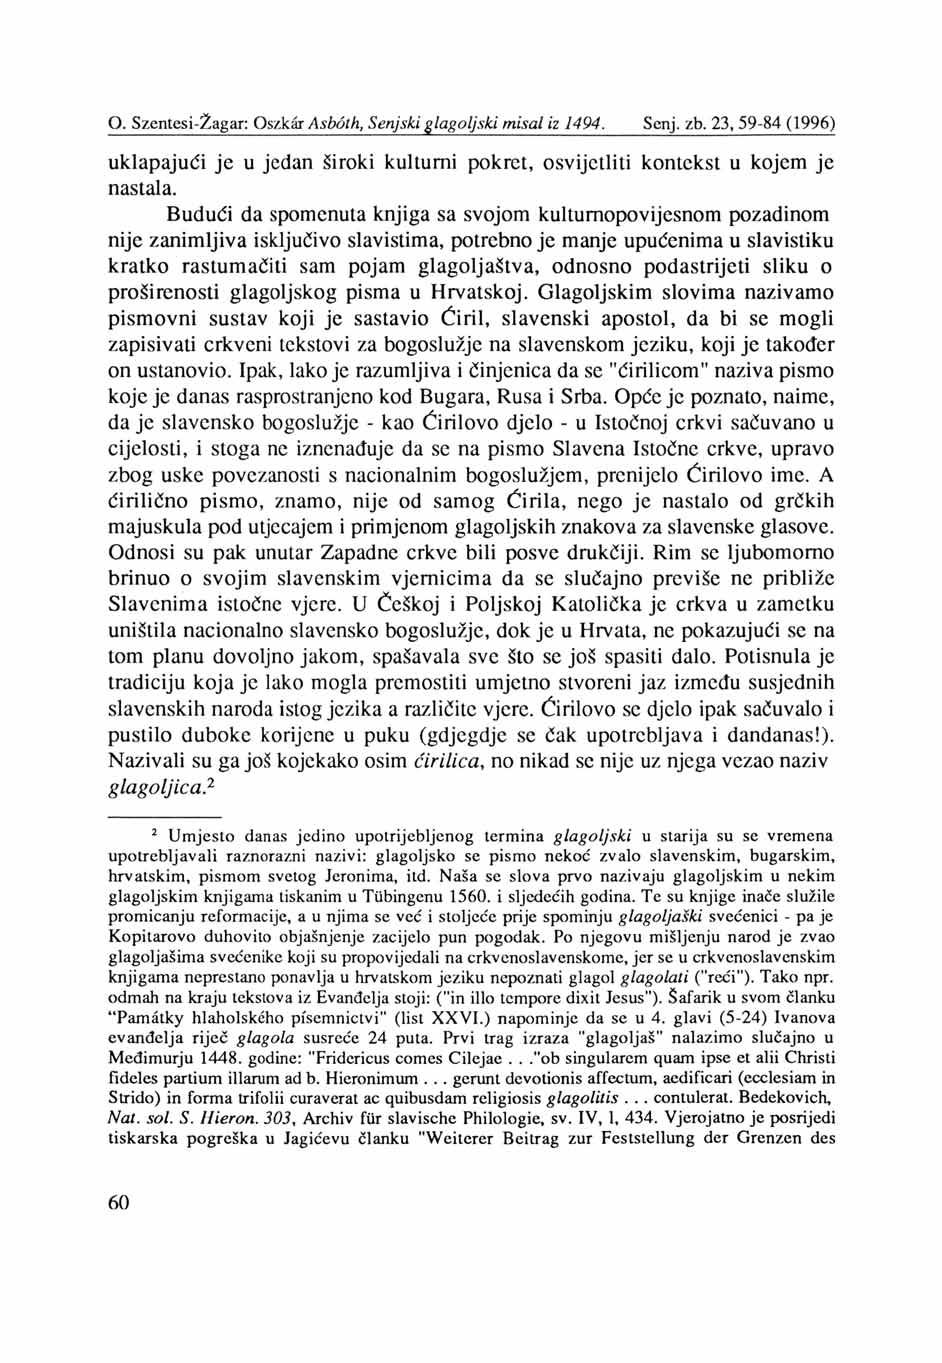 O. Szentesi-Žagar: Oszkär Asböth, Senjski glagoljski misal iz 1494. Senj, zb. 23, 59-84 (1996) uklapajući je u jedan široki kulturni pokret, osvijetliti kontekst u kojem je nastala.